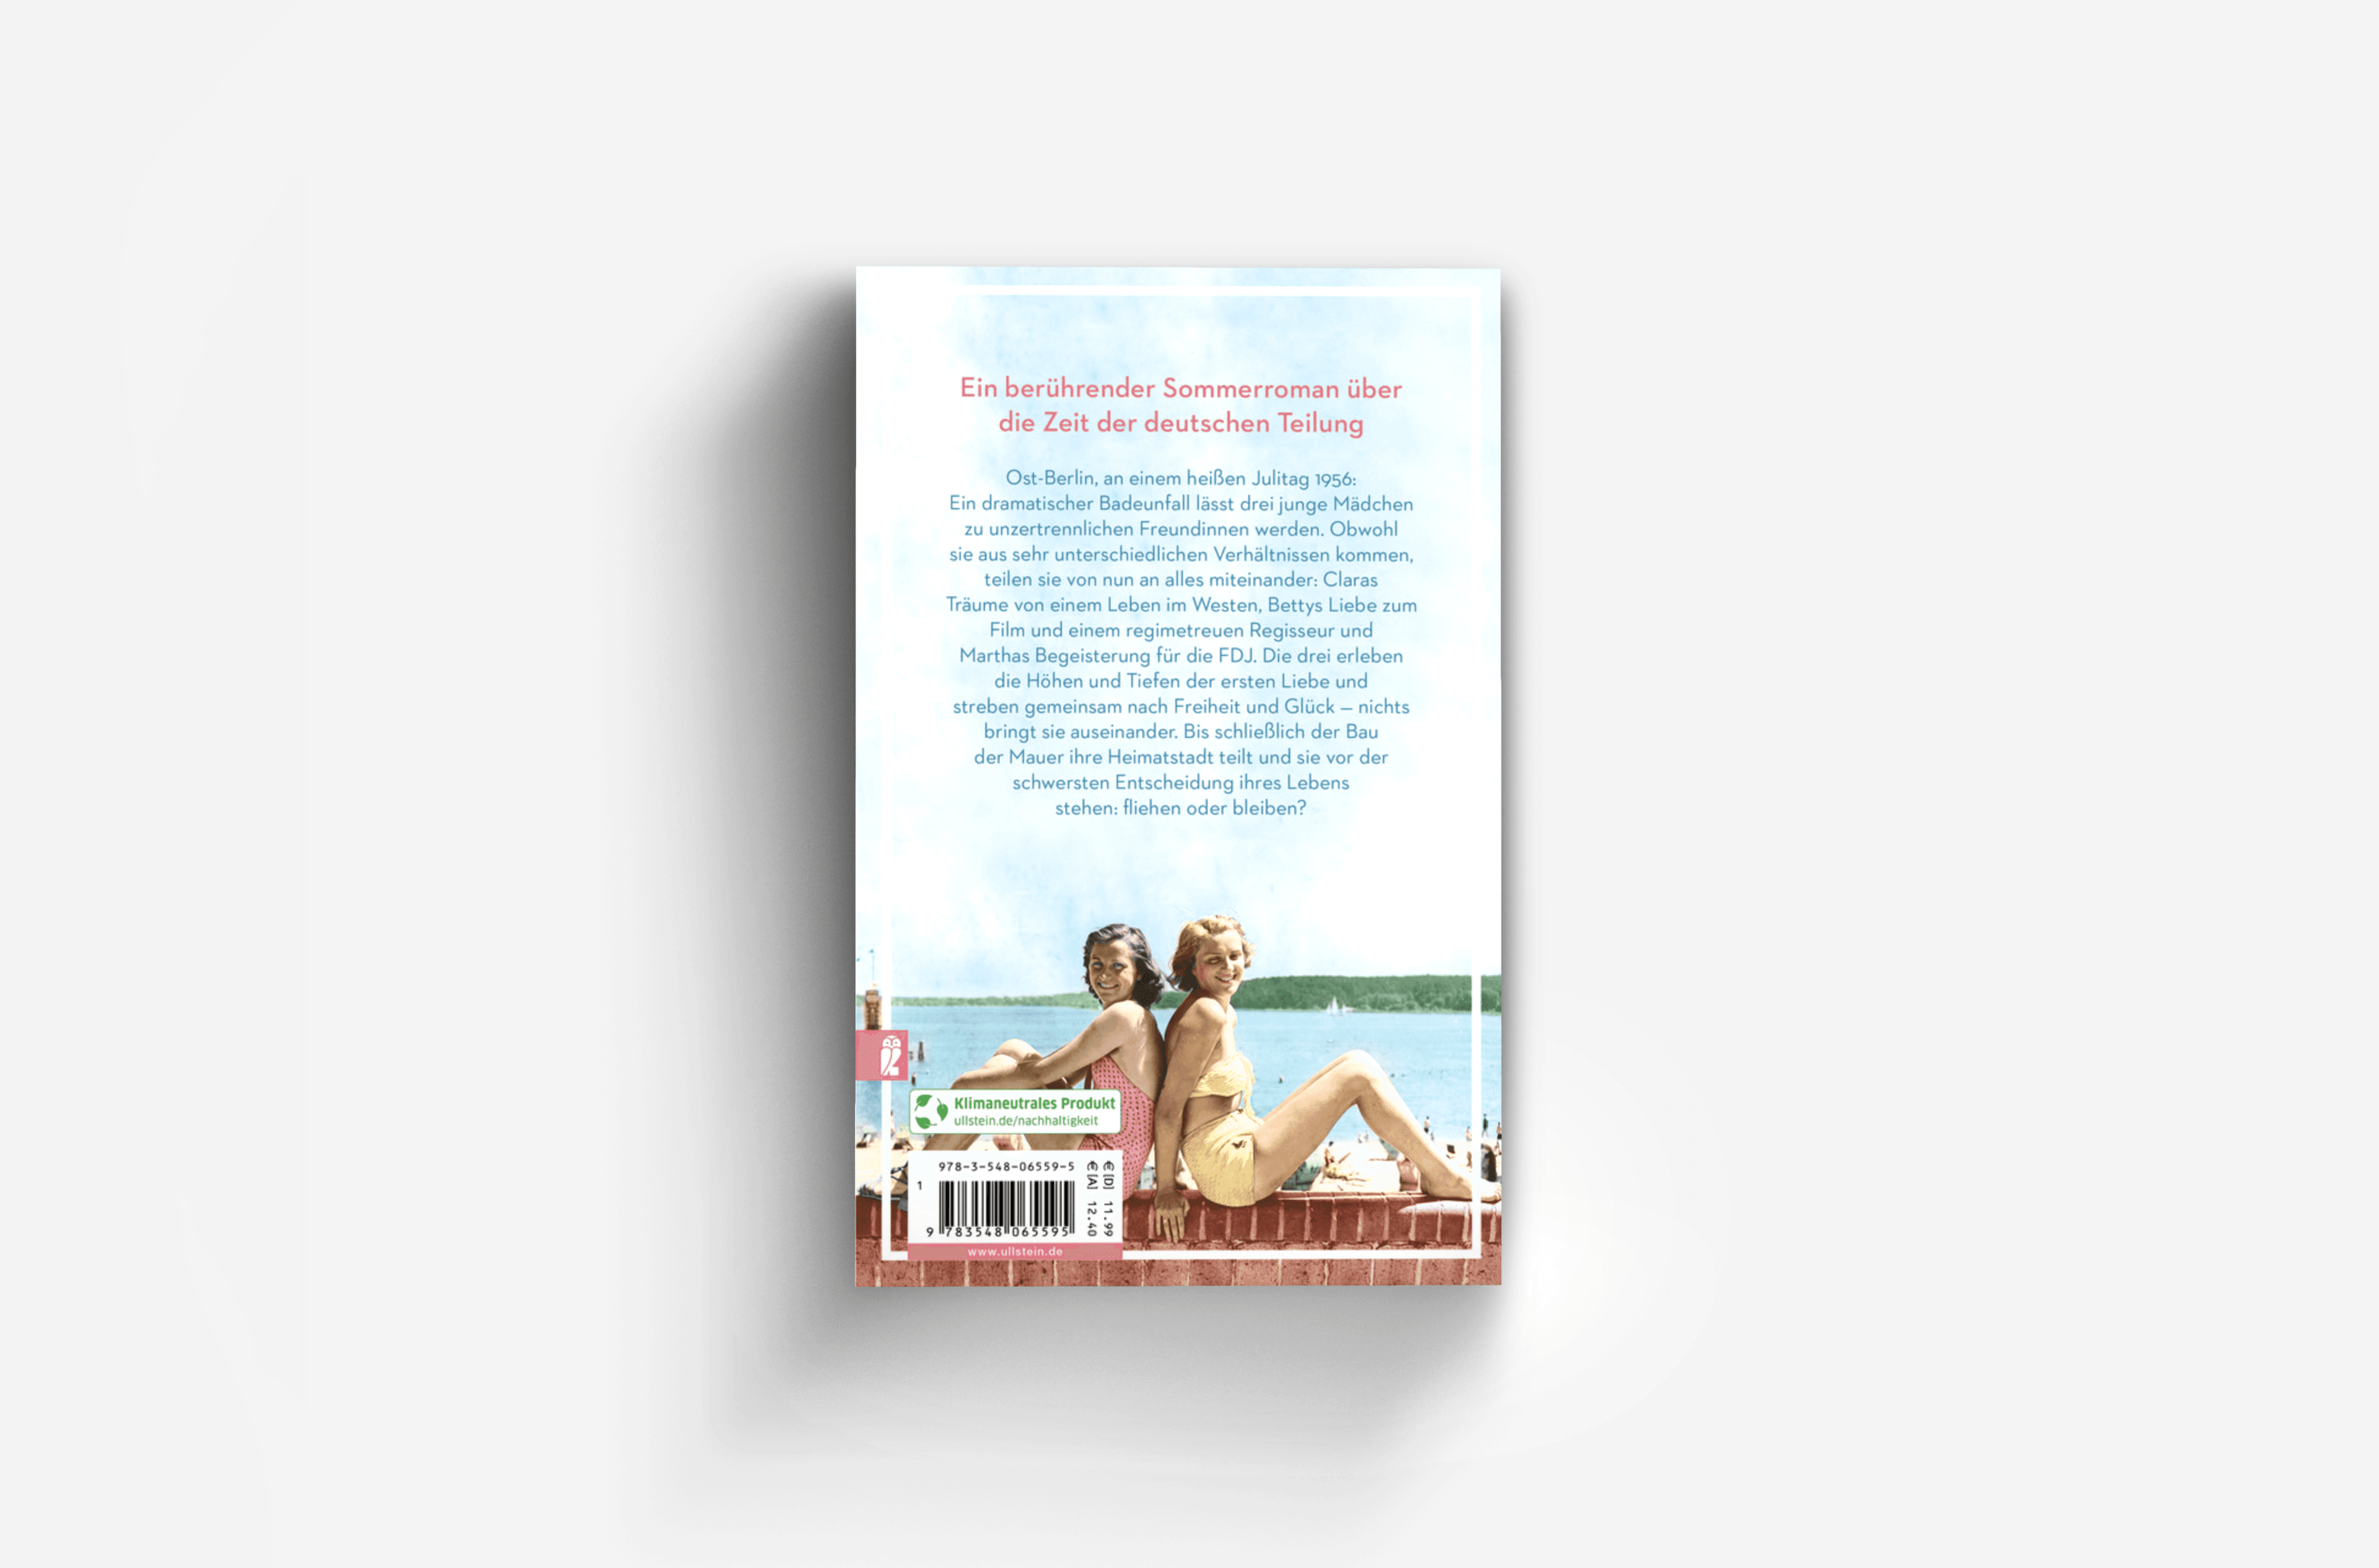 Buchcover von Die Freundinnen vom Strandbad (Die Müggelsee-Saga 1)